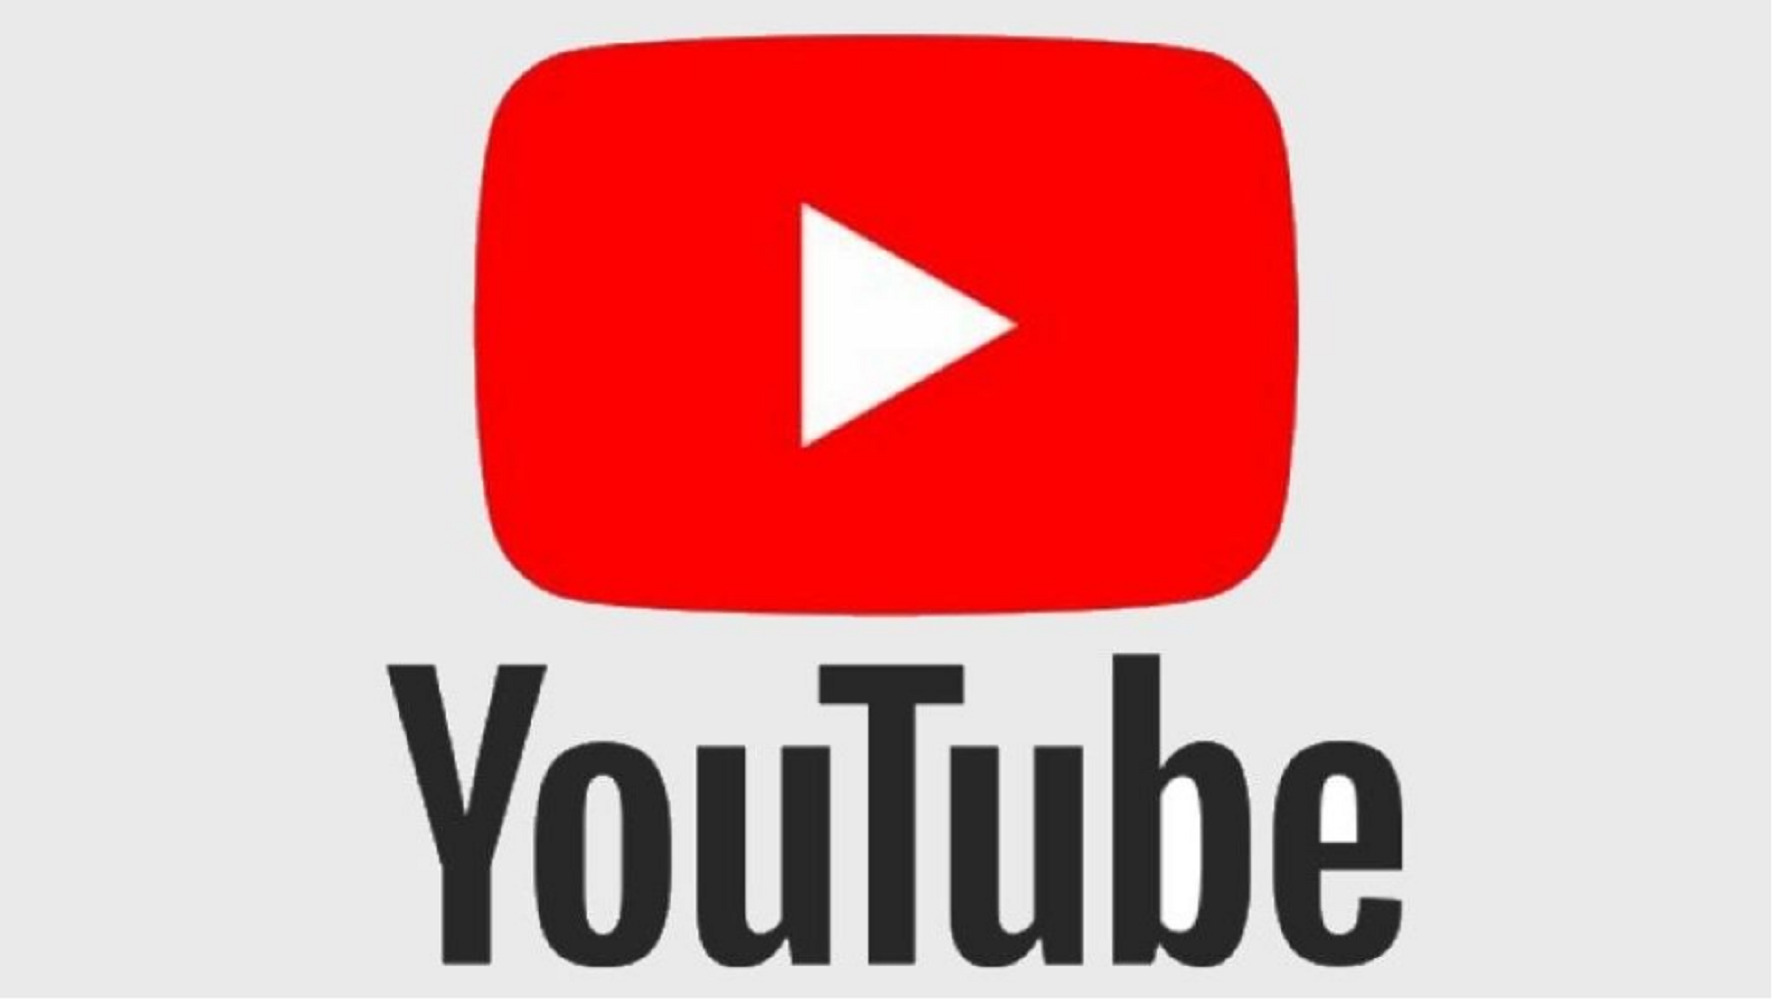 YouTube Rewind: Produksi Video Tahunan Tidak Dilakukan, Karena Pandemi Global